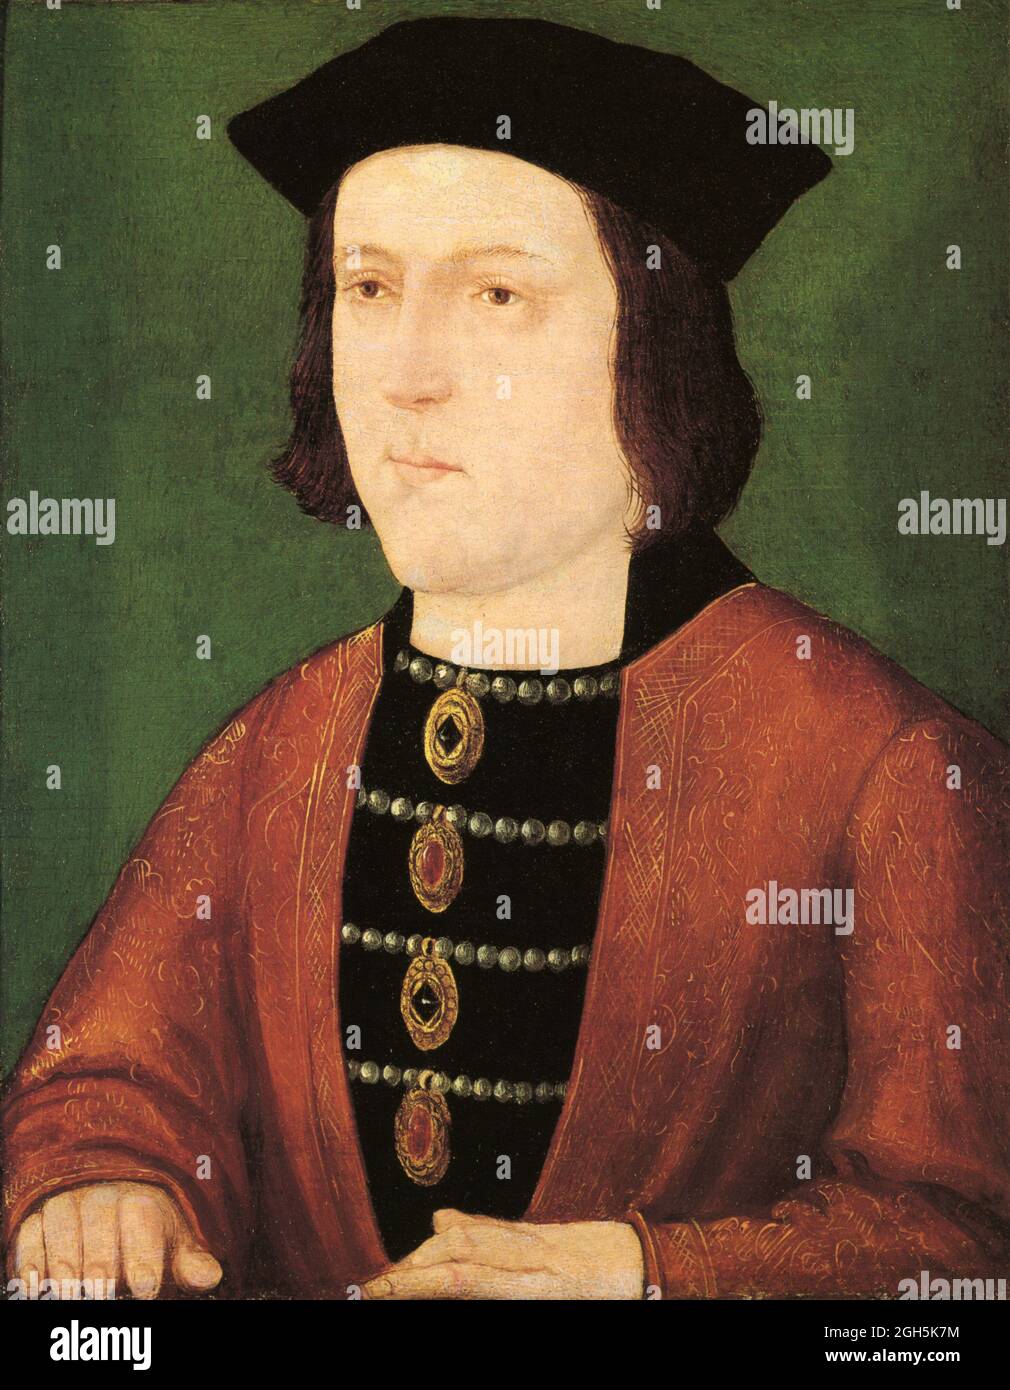 Un ritratto di re Edoardo IV che fu re d'Inghilterra dal 1471 al 1483 Foto Stock